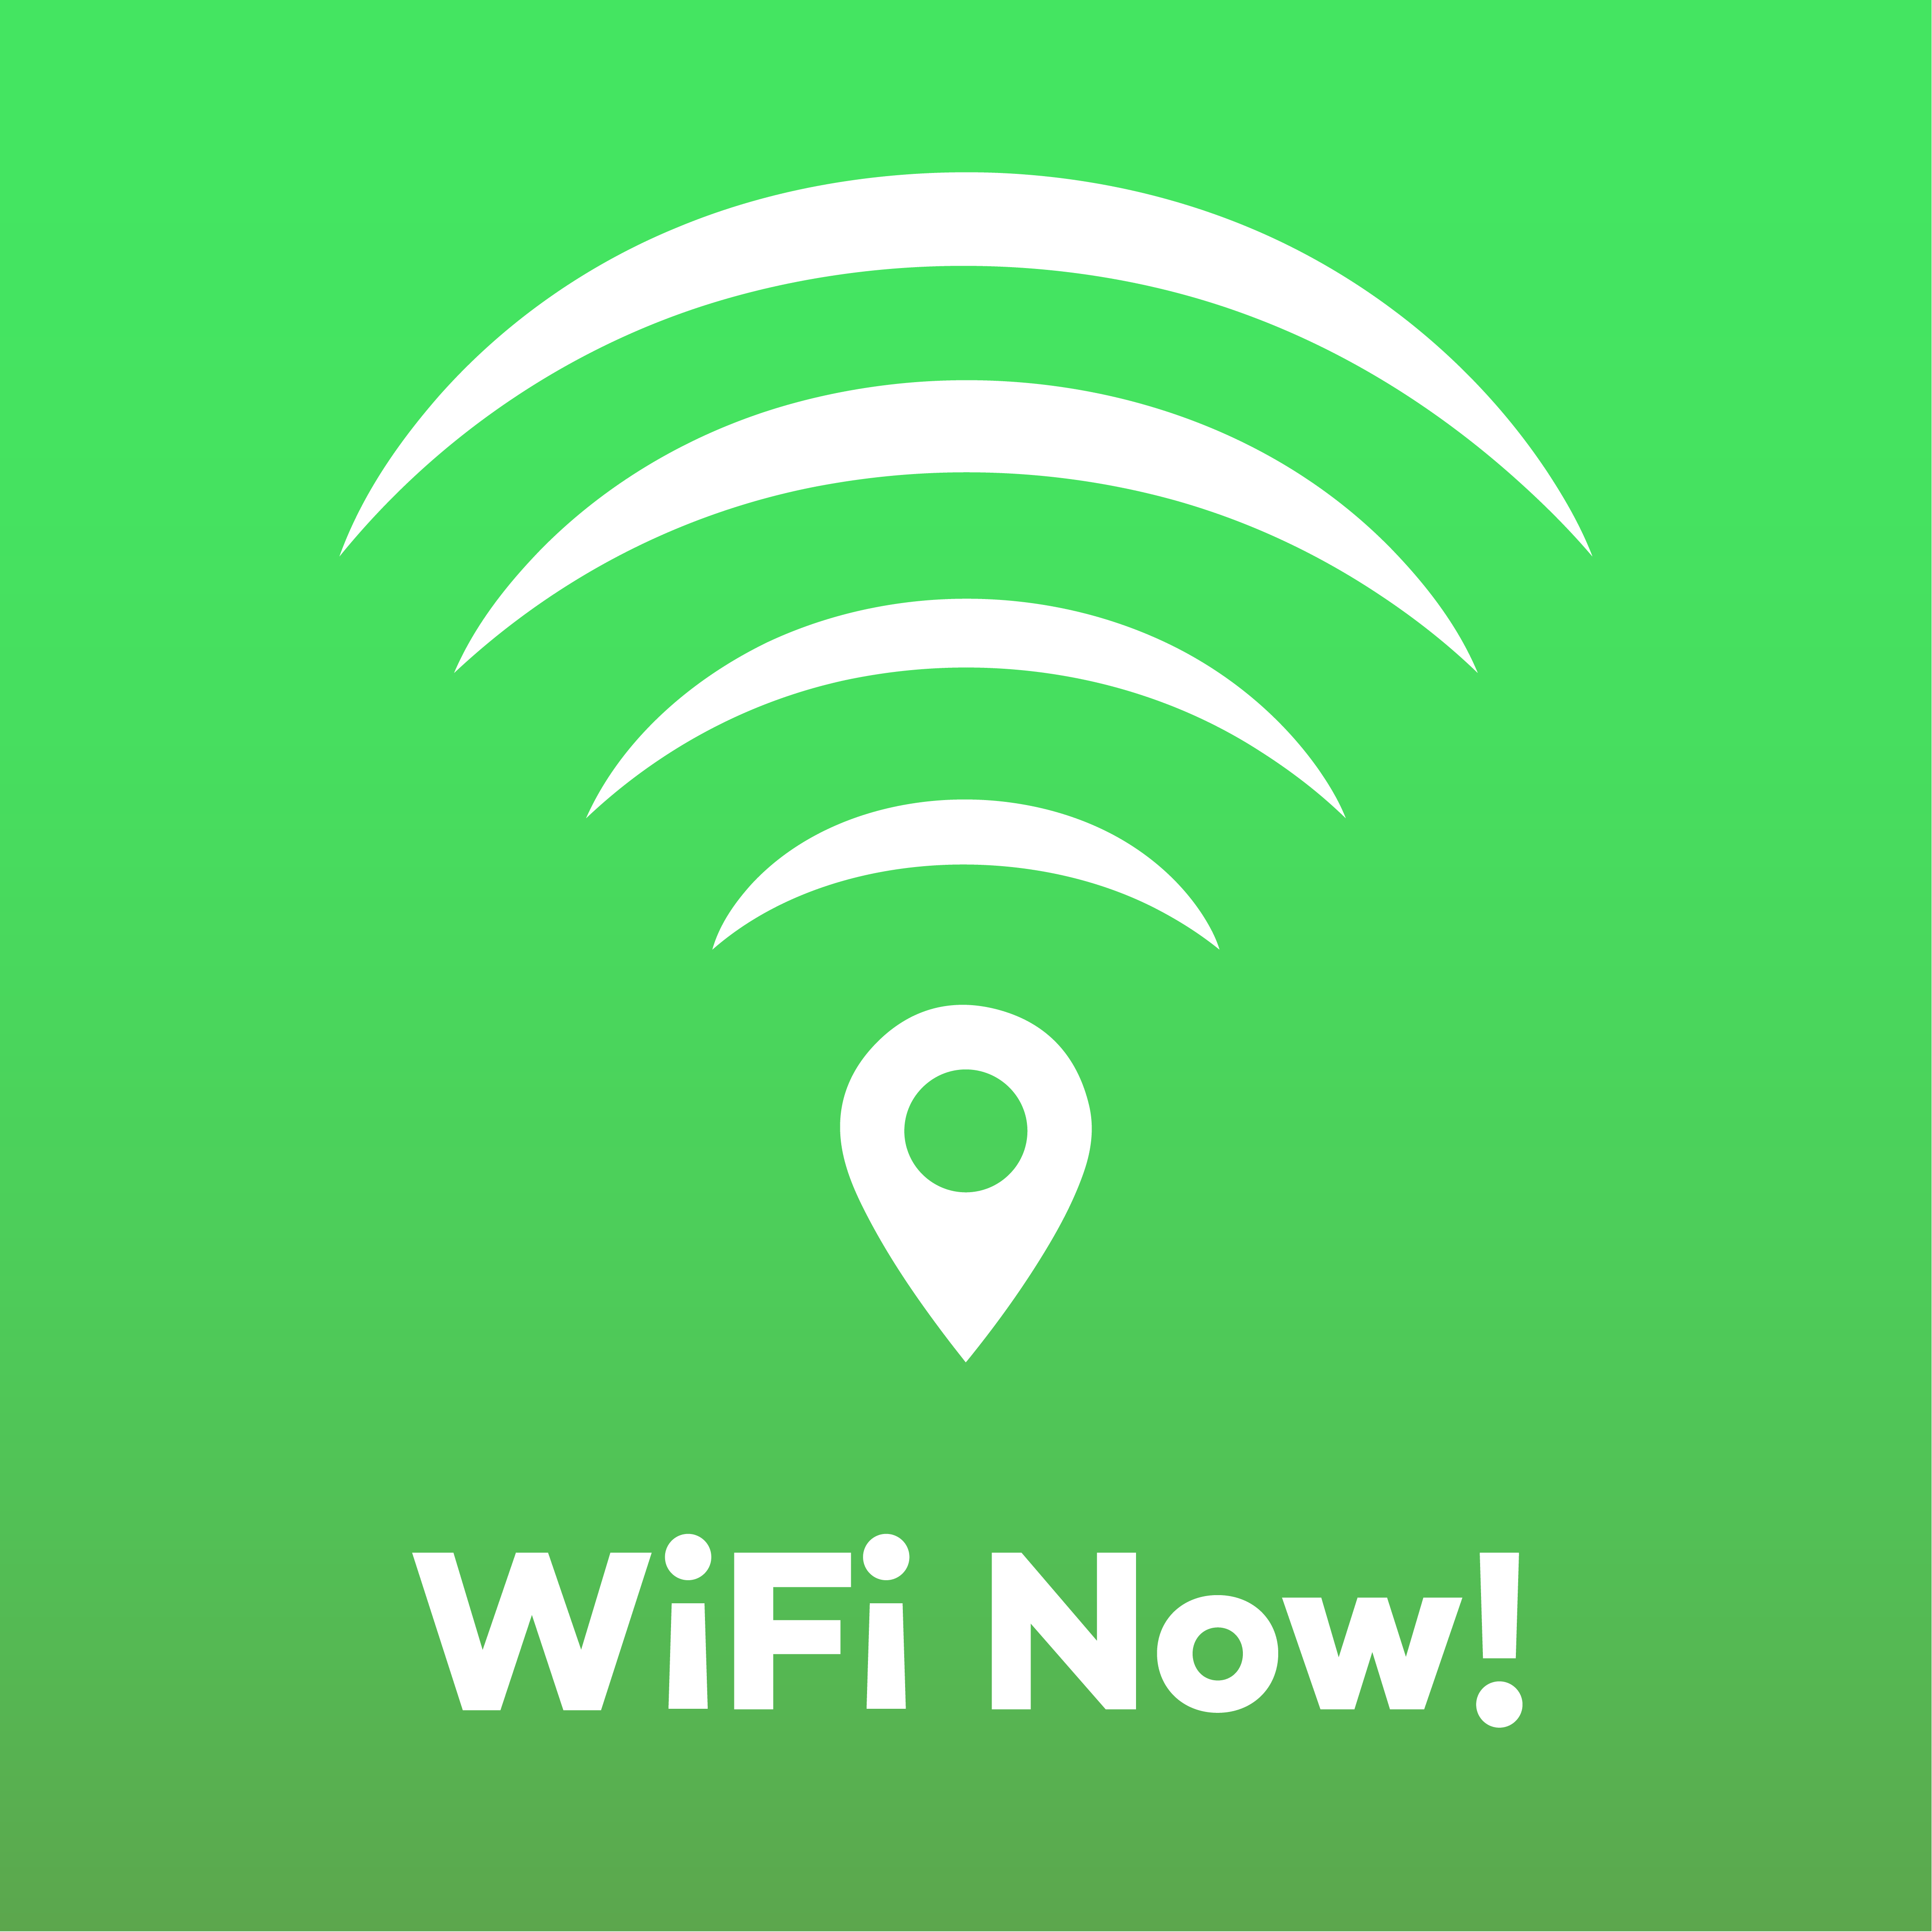 WiFi Now!